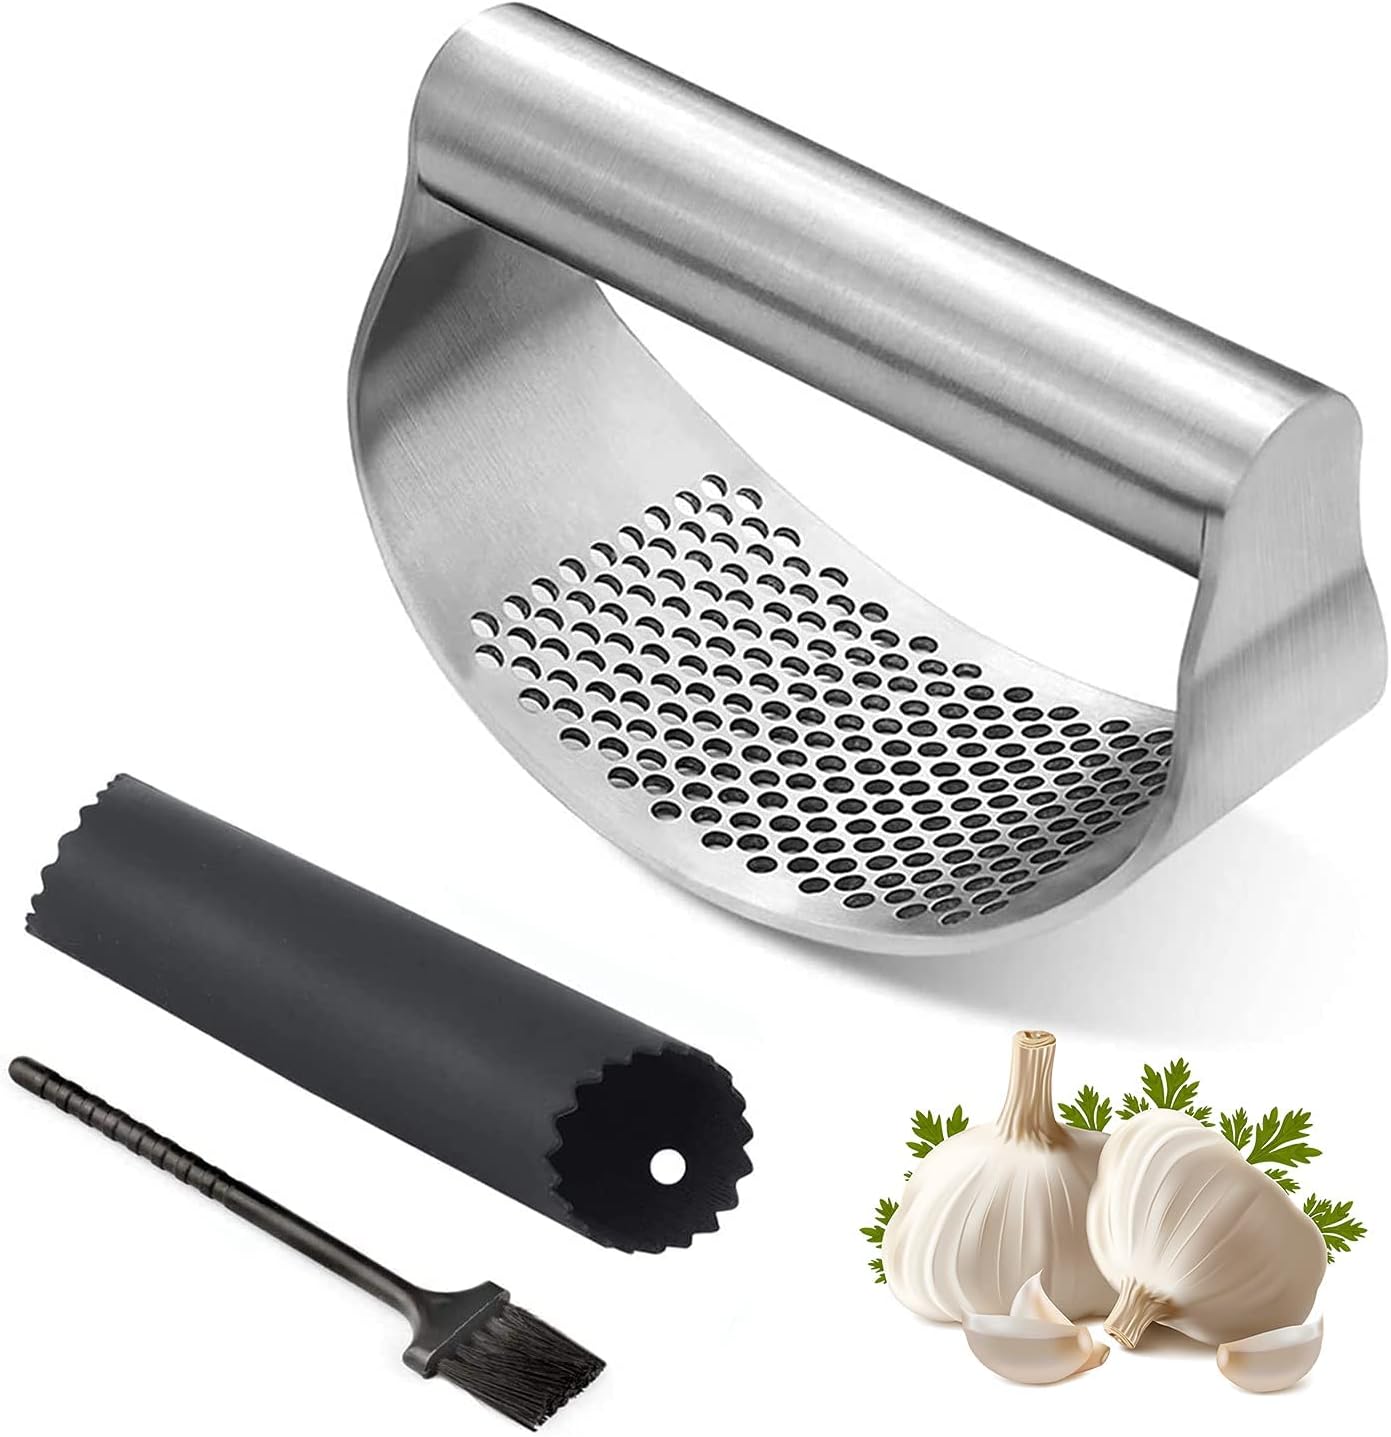 Stainless Steel Garlic Press: Effortless Cooking Essential.